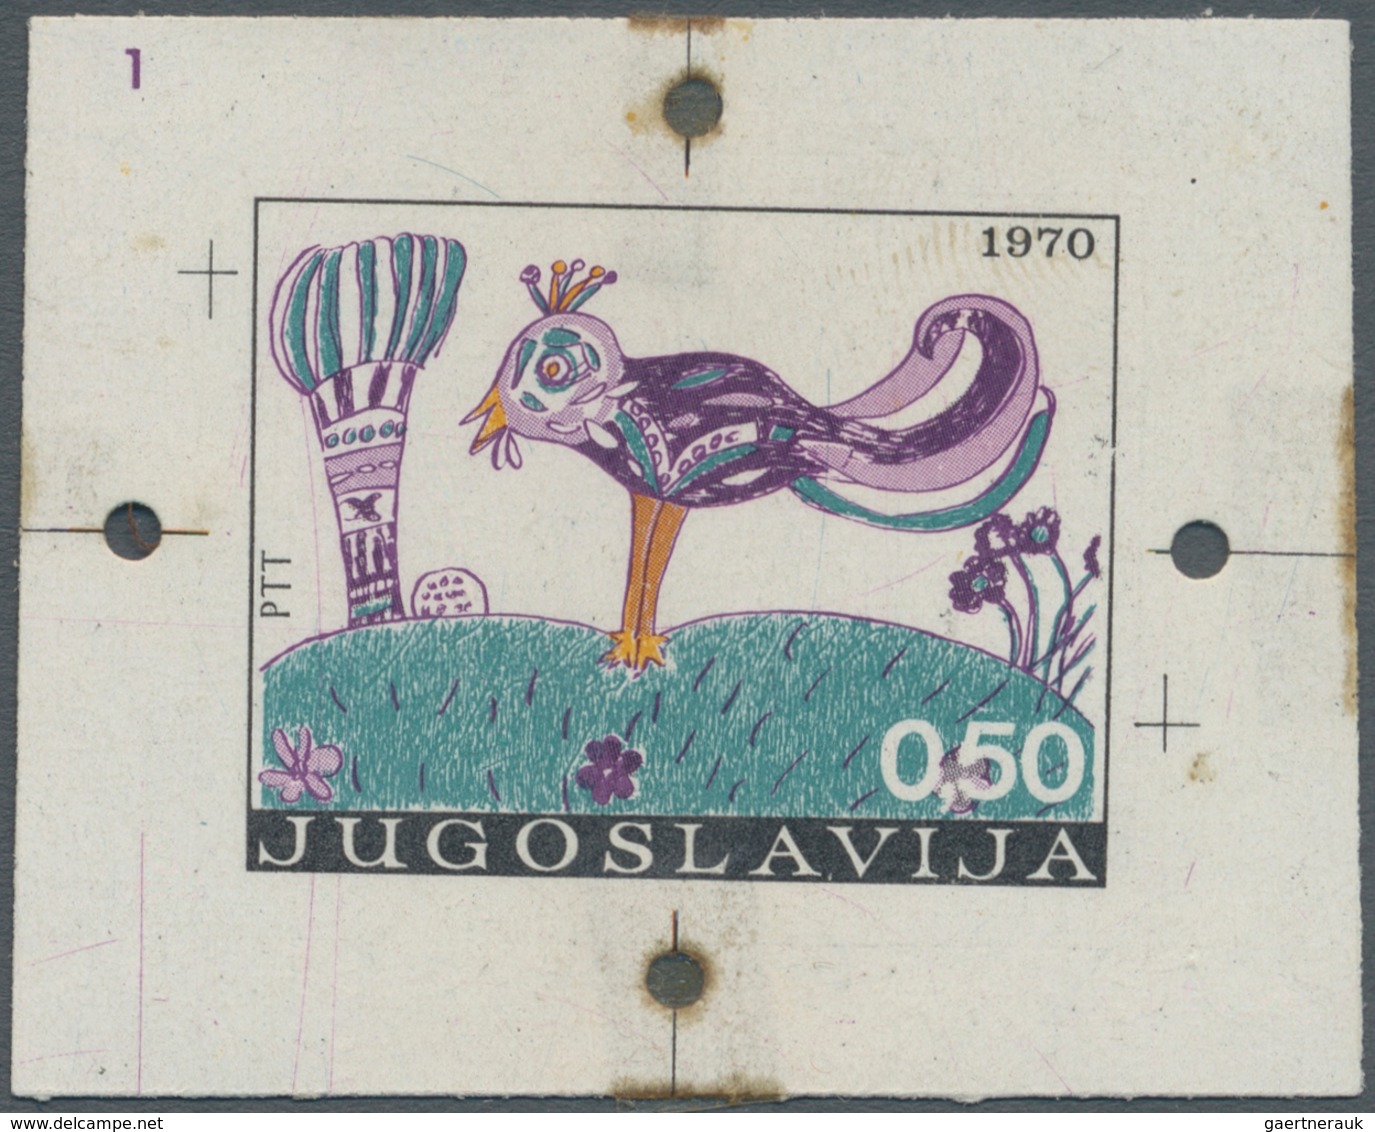 Jugoslawien: ab 1918 tolle Partie nur besserer ausgesuchter Einzelstücke, dabei Besonderheiten, Abar